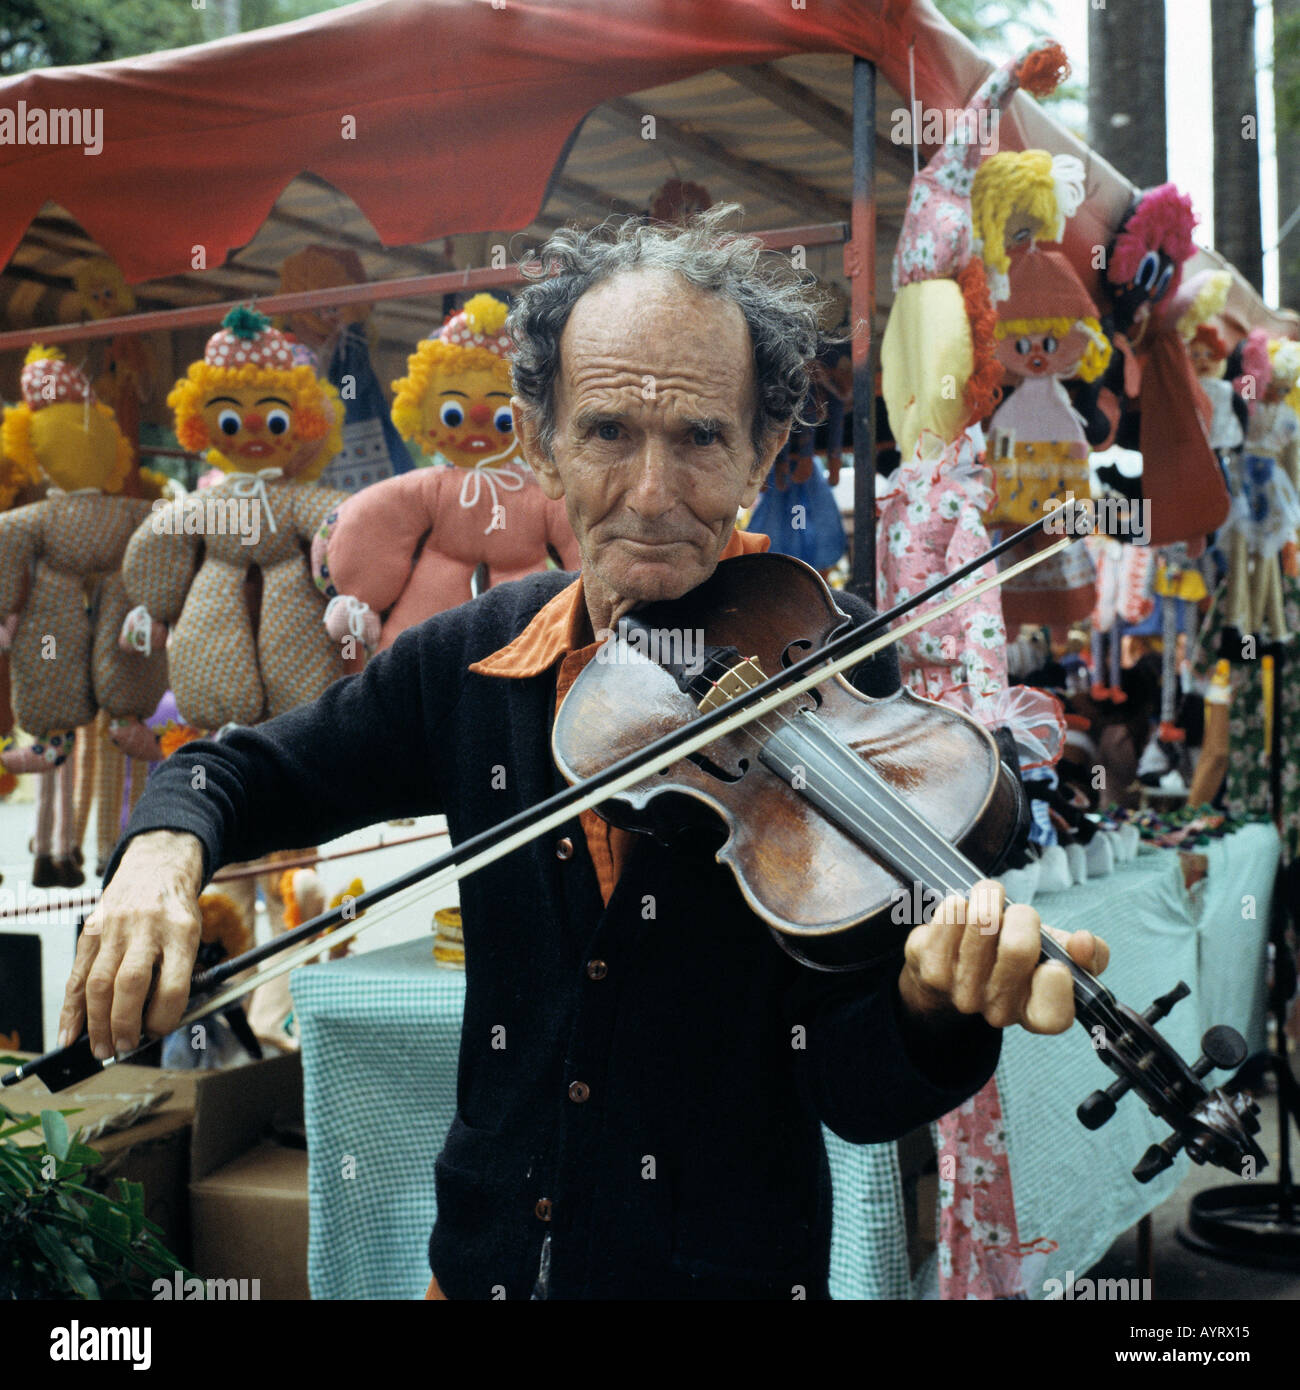 Alter Mann mit Violine, Messe, Flohmarkt, Trödel-Markt, Brasilien, BR-Belo Horizonte, Minas Gerais Stockfoto